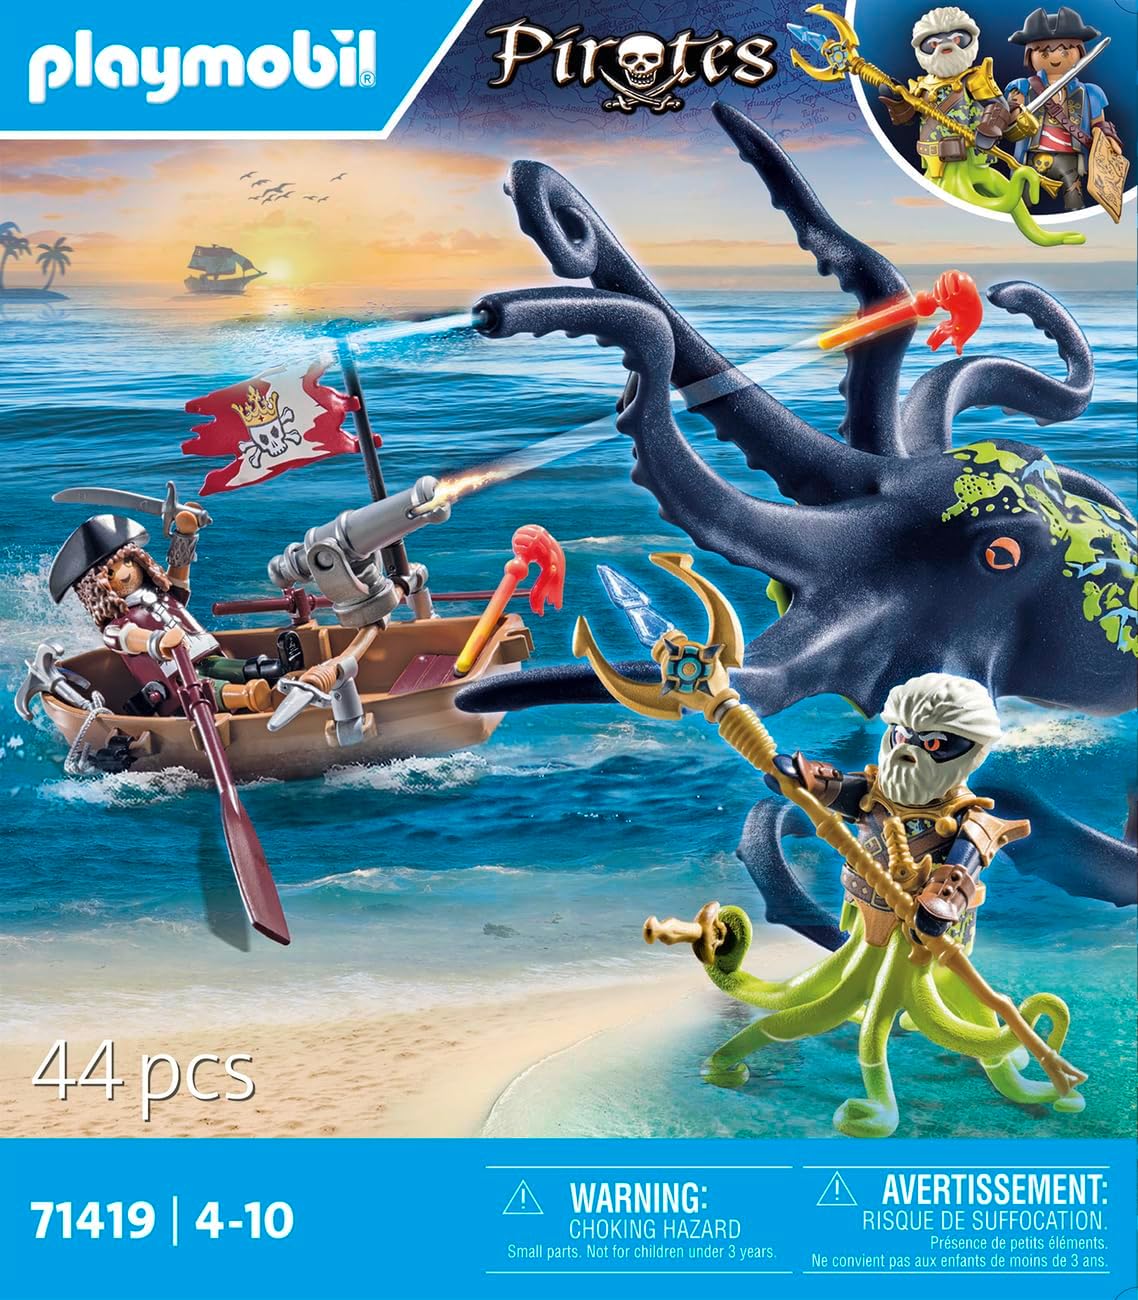 Playmobil 71419 Piratas: Batalha com o Polvo Gigante, Piratas vs. Deepers, polvo com função de borrifar água e canhão de disparo, encenação divertida e imaginativa, conjuntos de jogos adequados para crianças de 4 anos ou mais